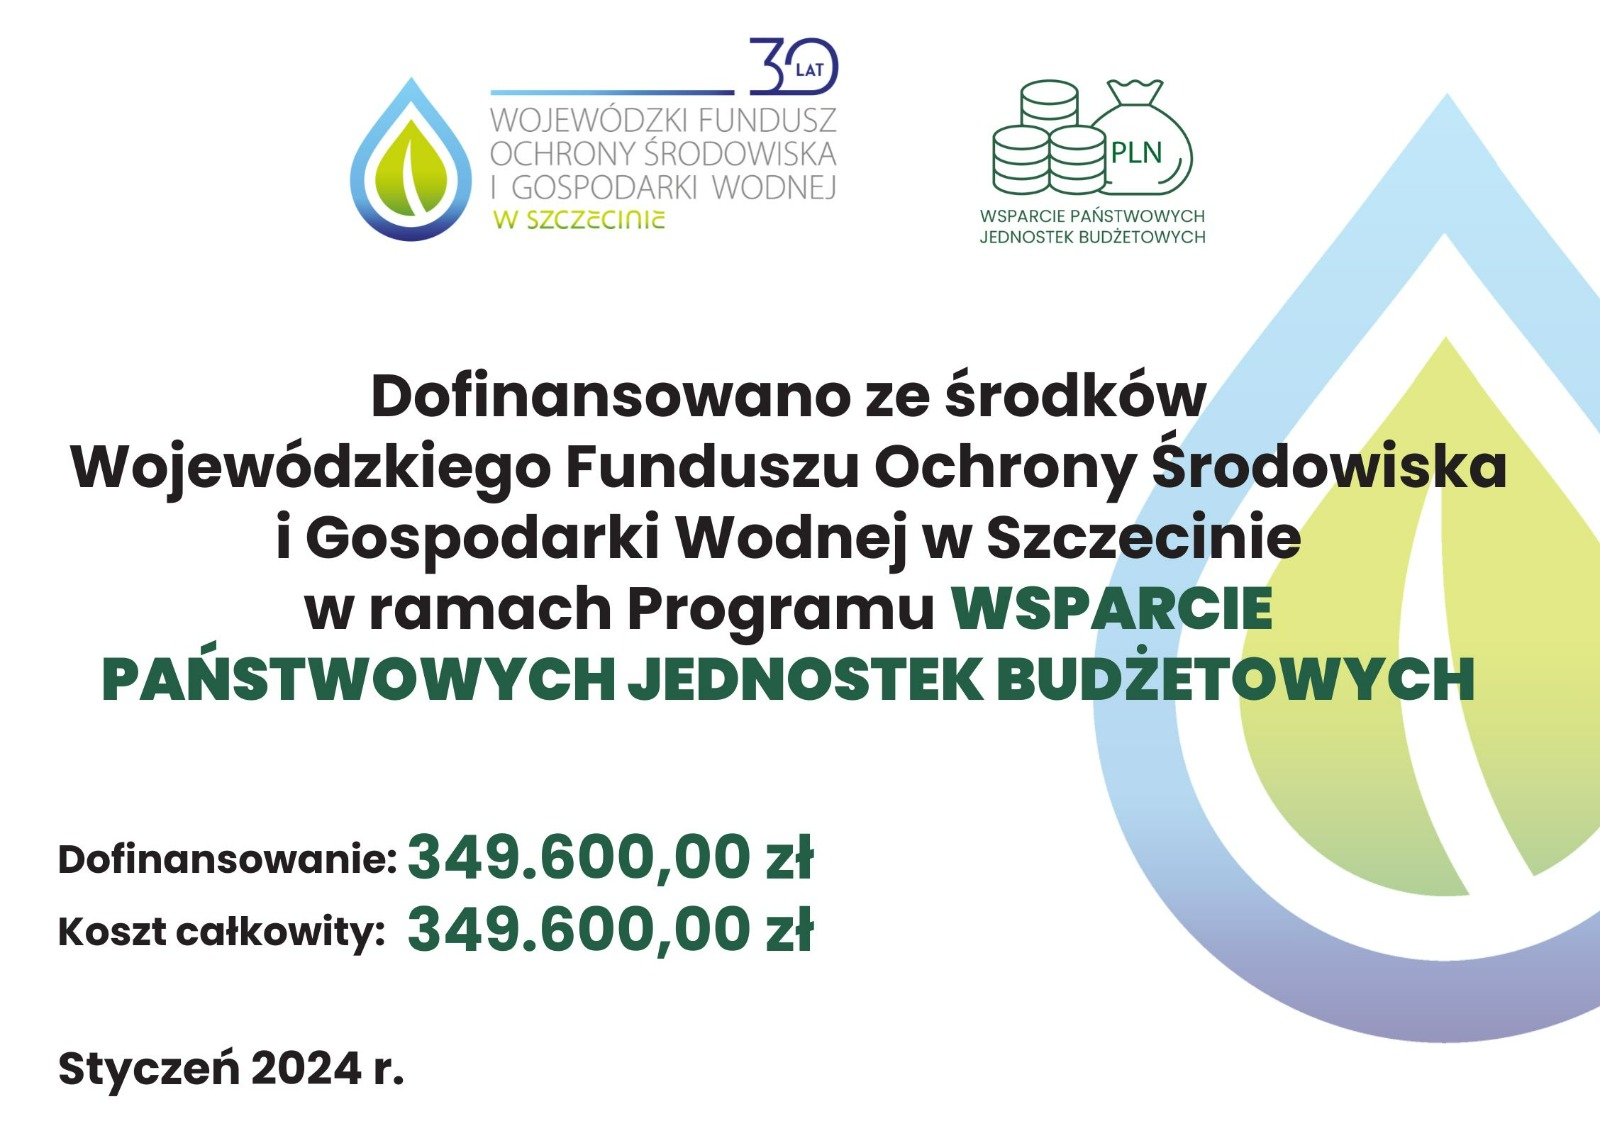 Blisko 350 000 zł dofinansowania dla WIOŚ w Szczecinie na zakup sprzętu i wyposażenia